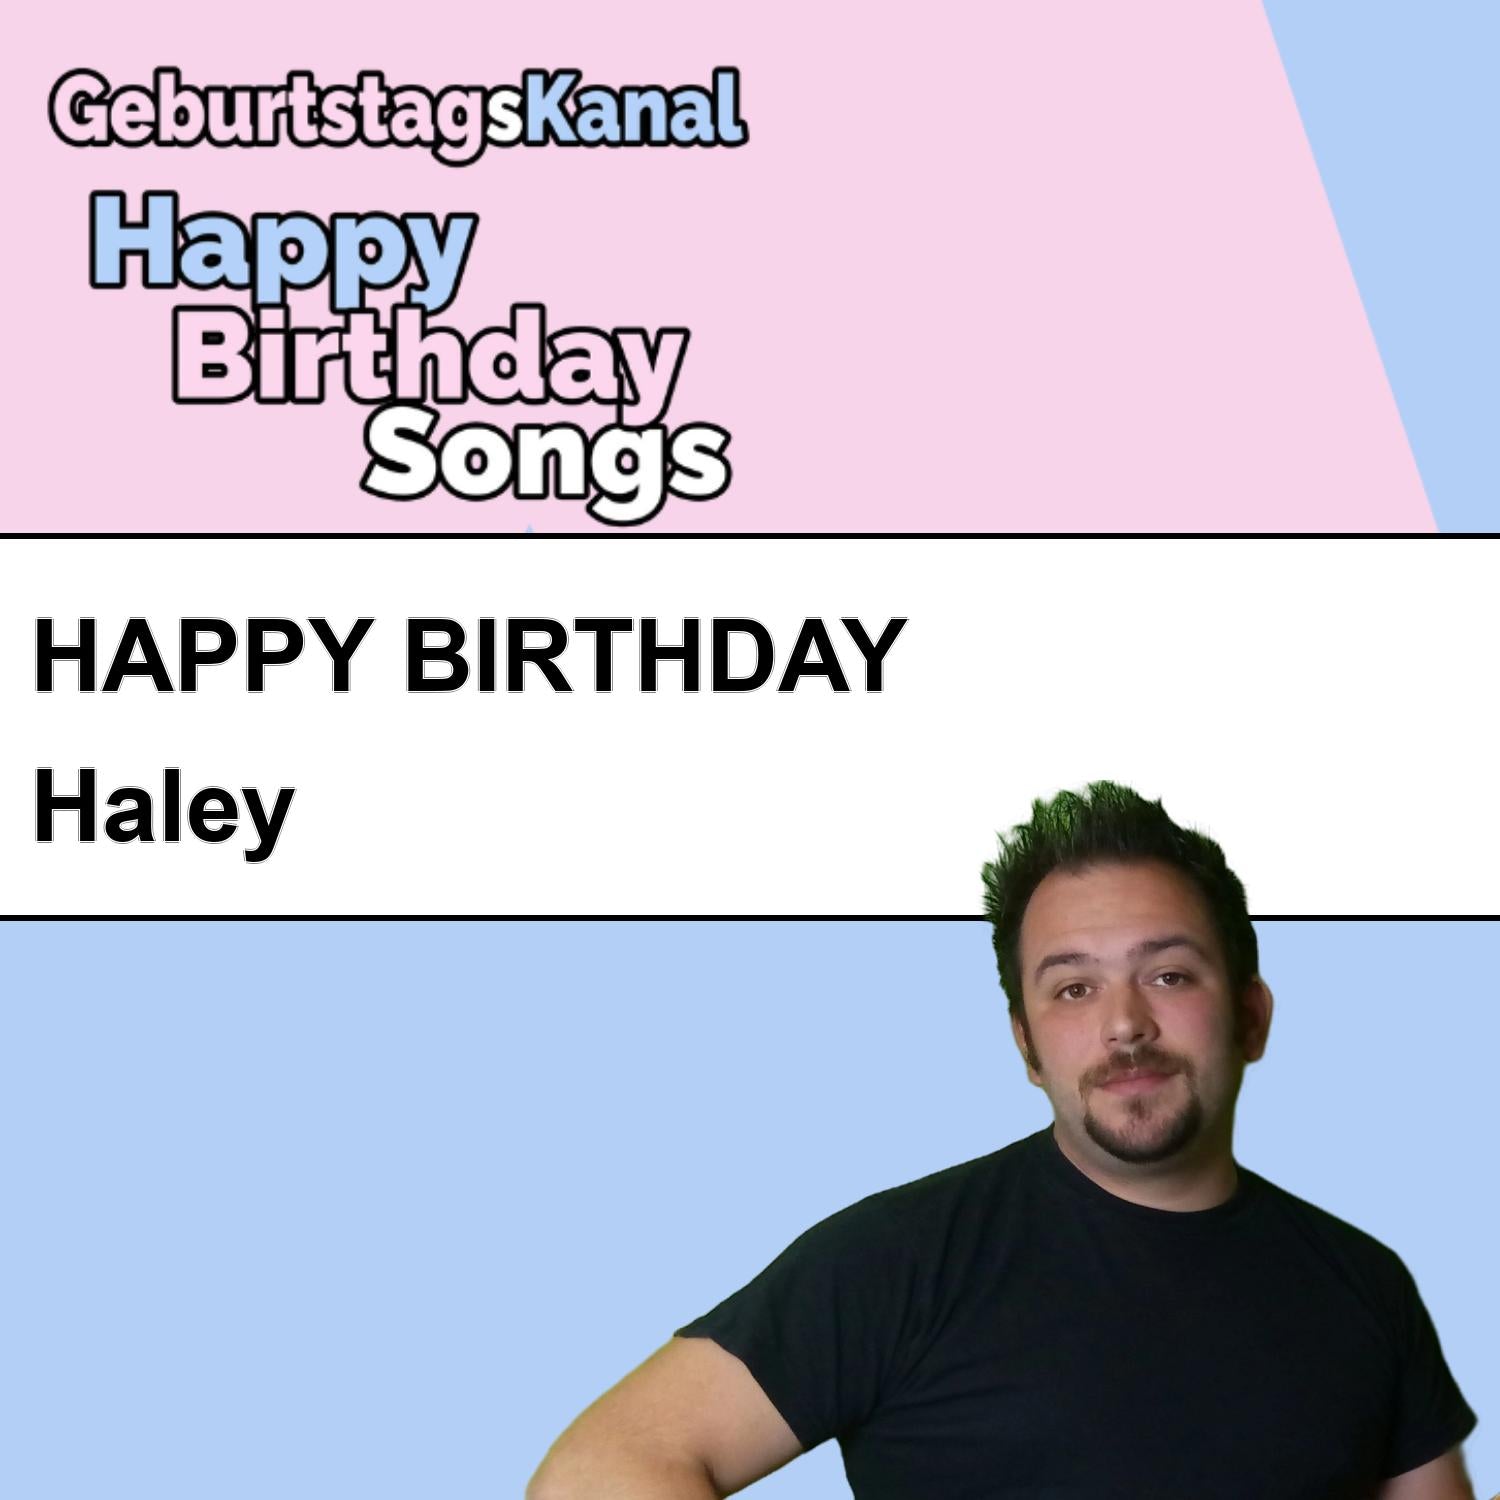 Produktbild Happy Birthday to you Haley mit Wunschgrußbotschaft